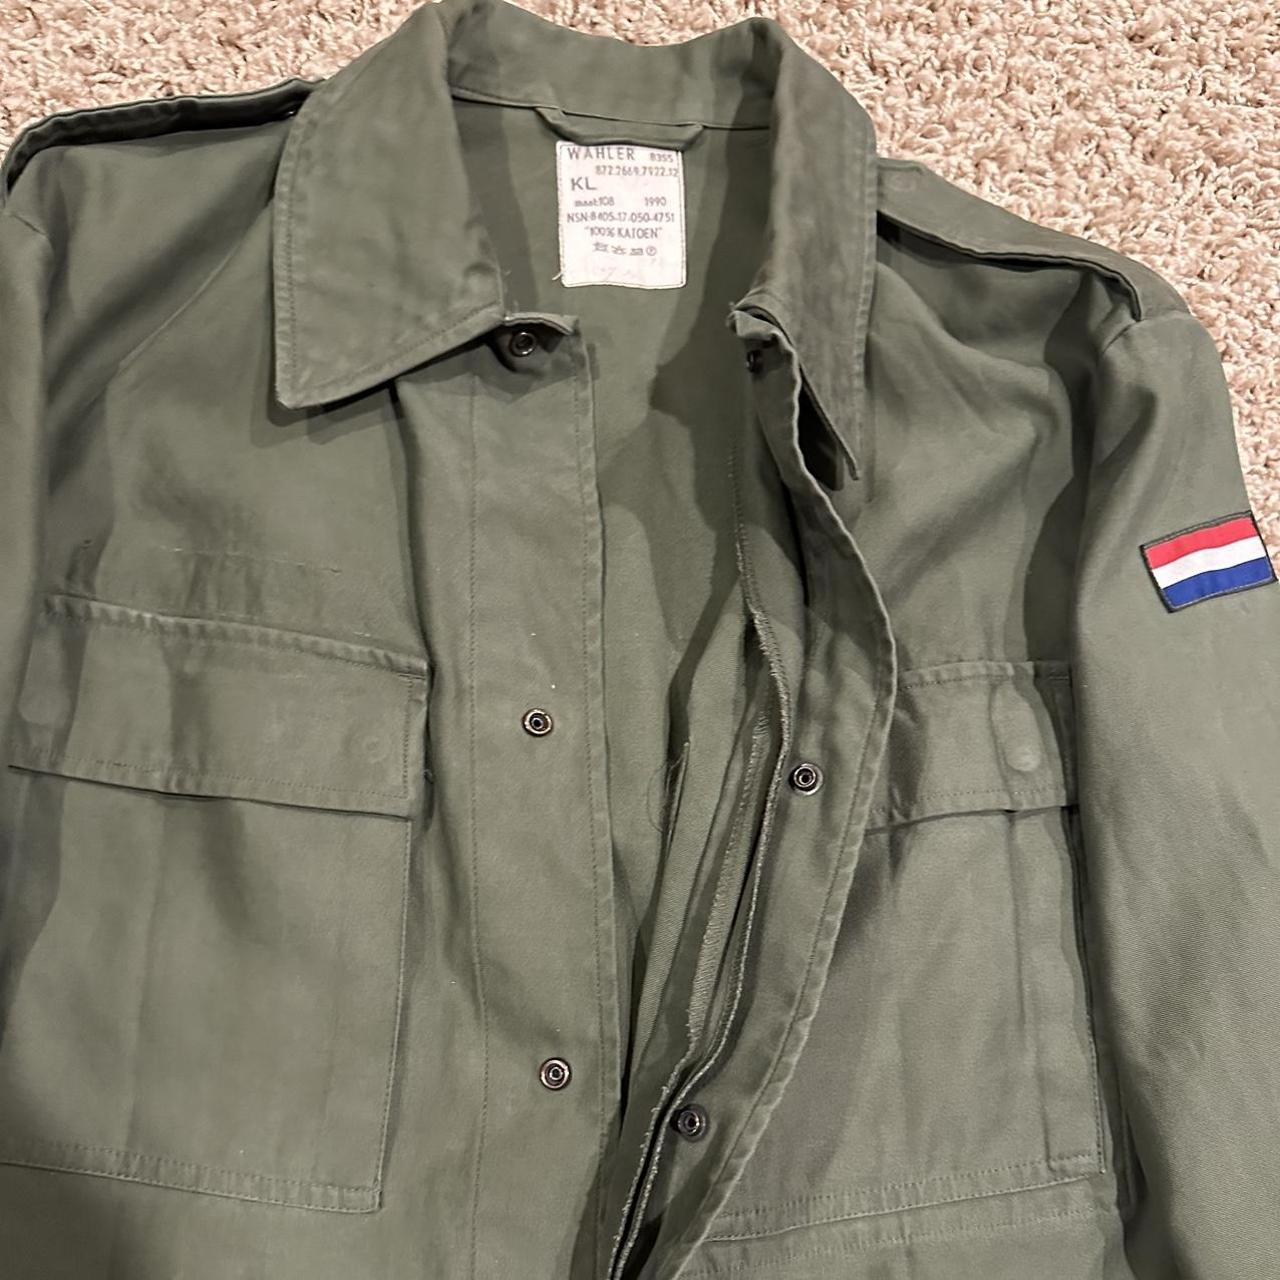 Vintage KL WAHLER Green Military Jacket 8355... - Depop